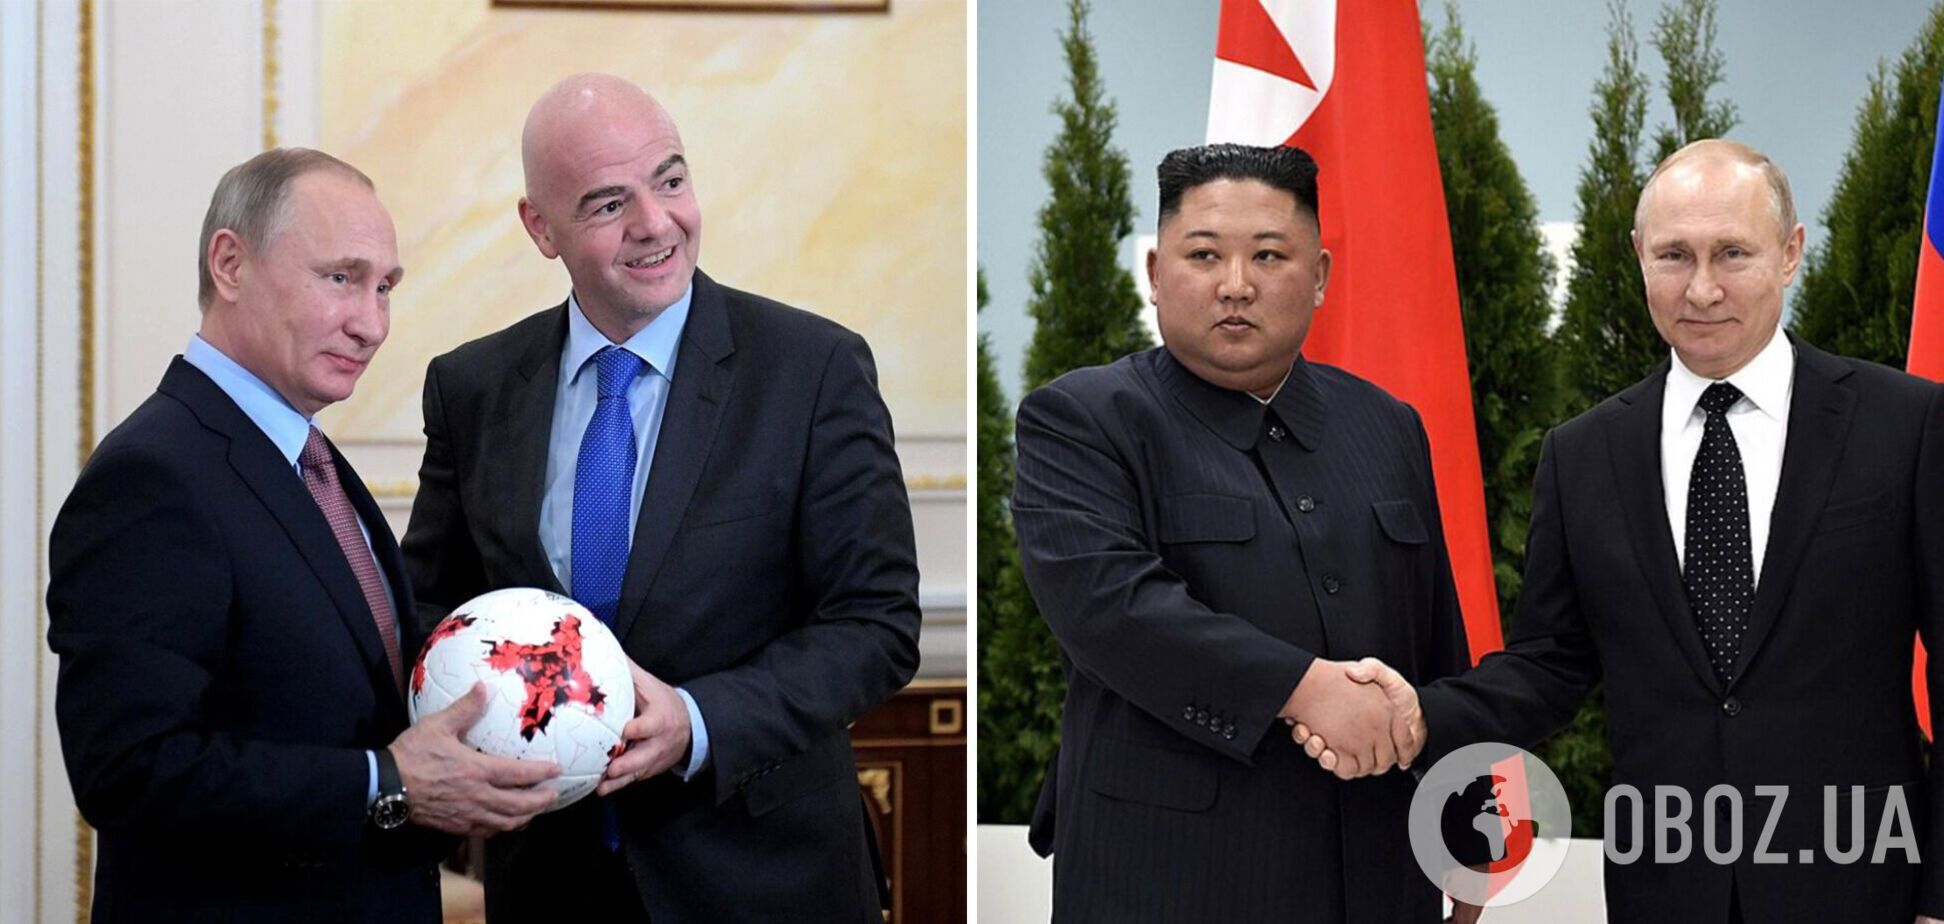 ЧМ по футболу в Северной Корее? Президент ФИФА отметился скандальной инициативой